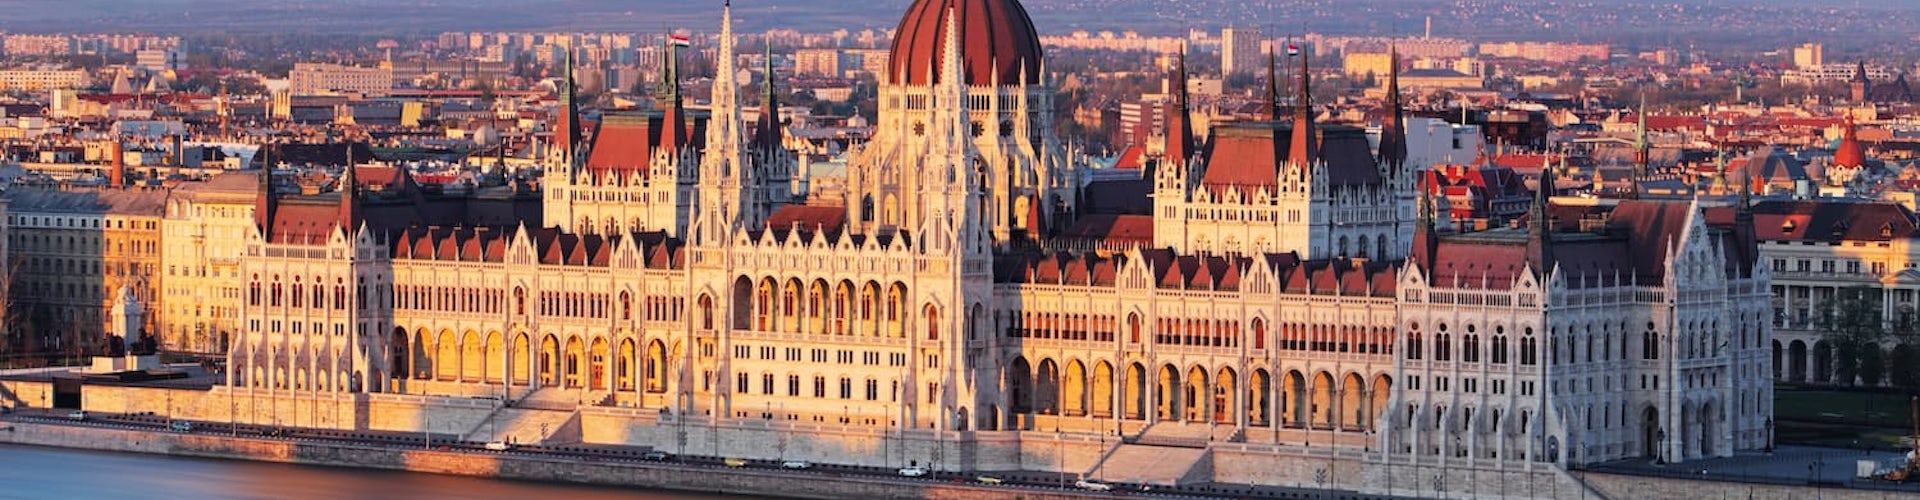 Qué ver en Budapest en 3 días